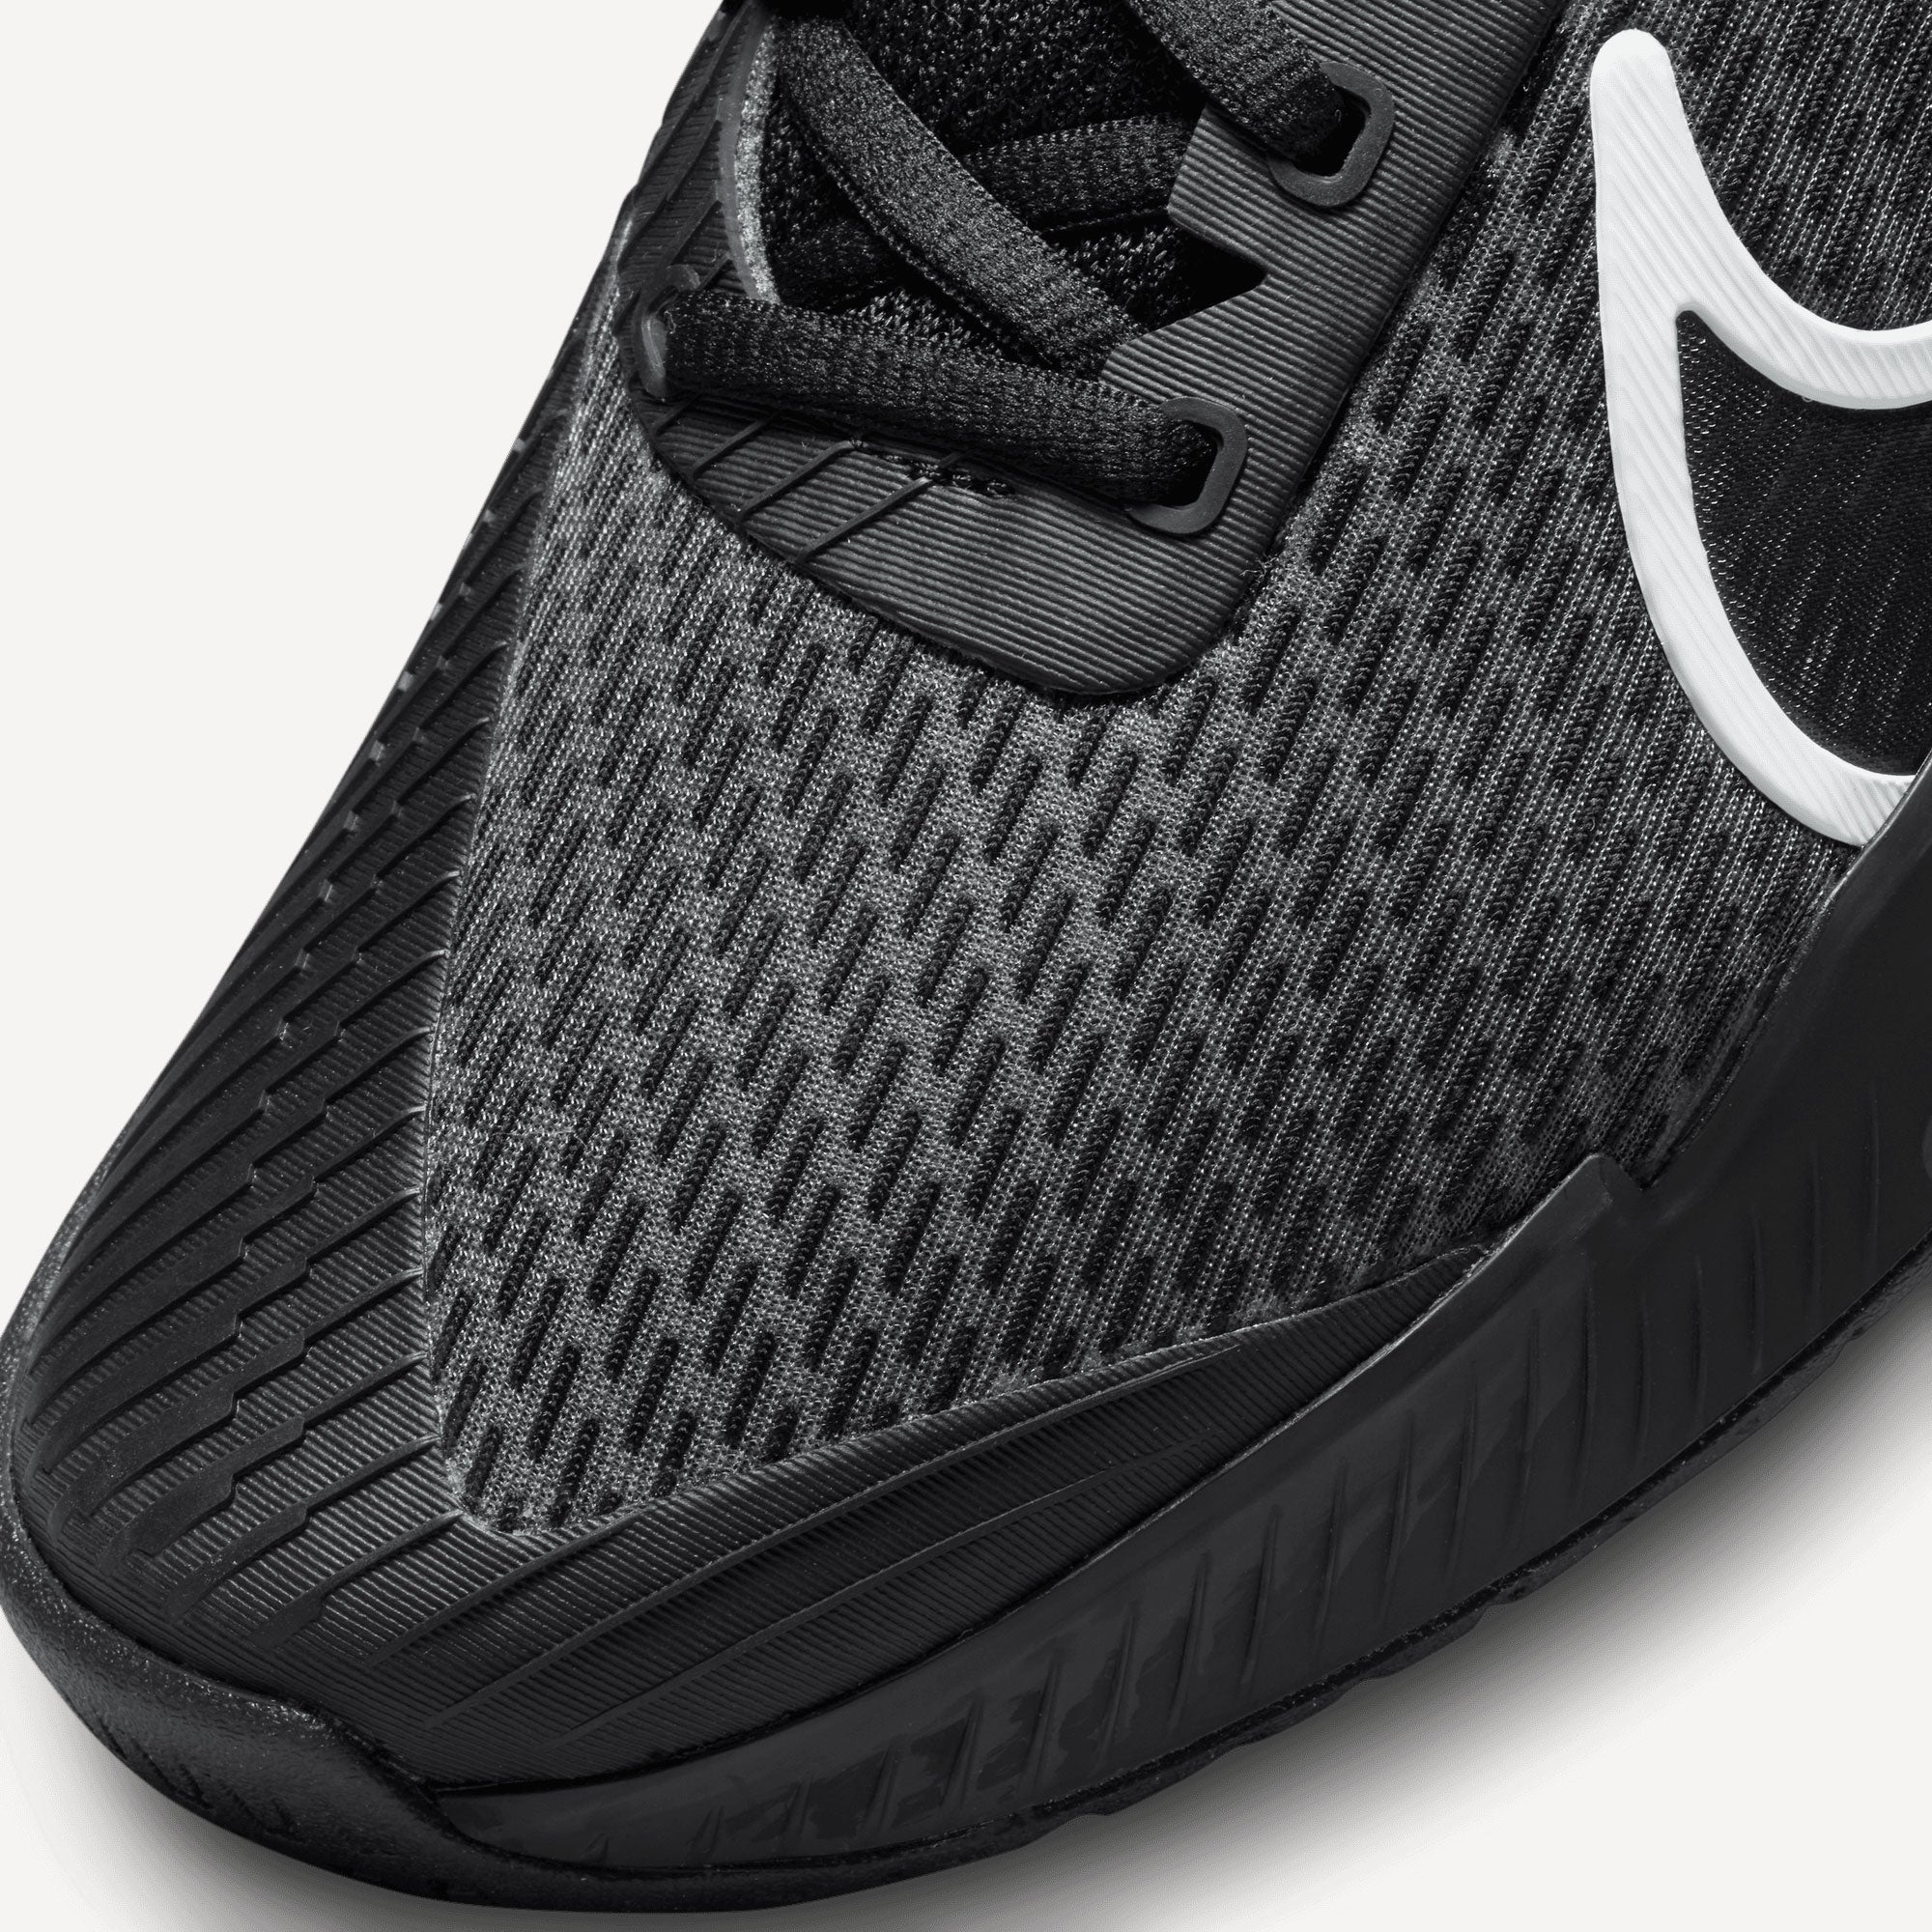 NikeCourt Air Zoom Vapor Pro 2 Men's Hard Court Tennis Shoes Black (7)